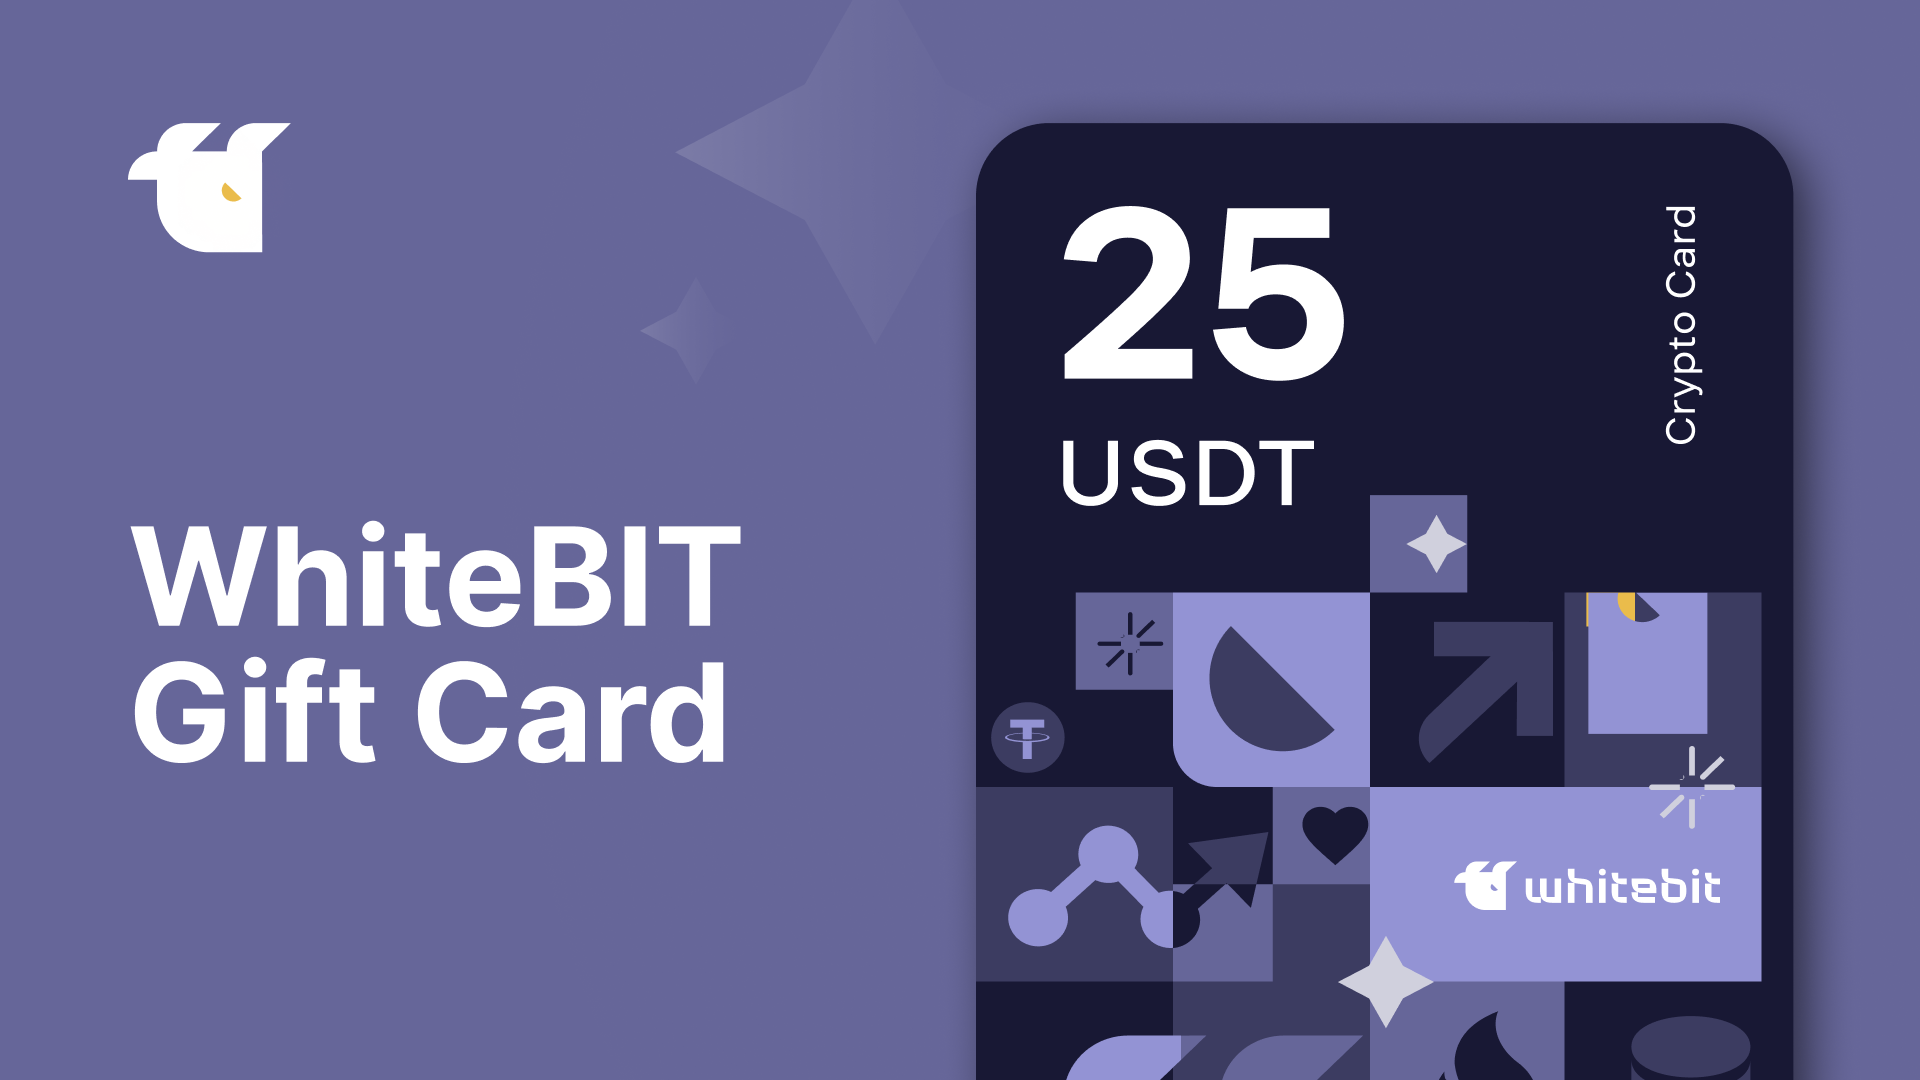 WhiteBIT 25 USDT Gift Card